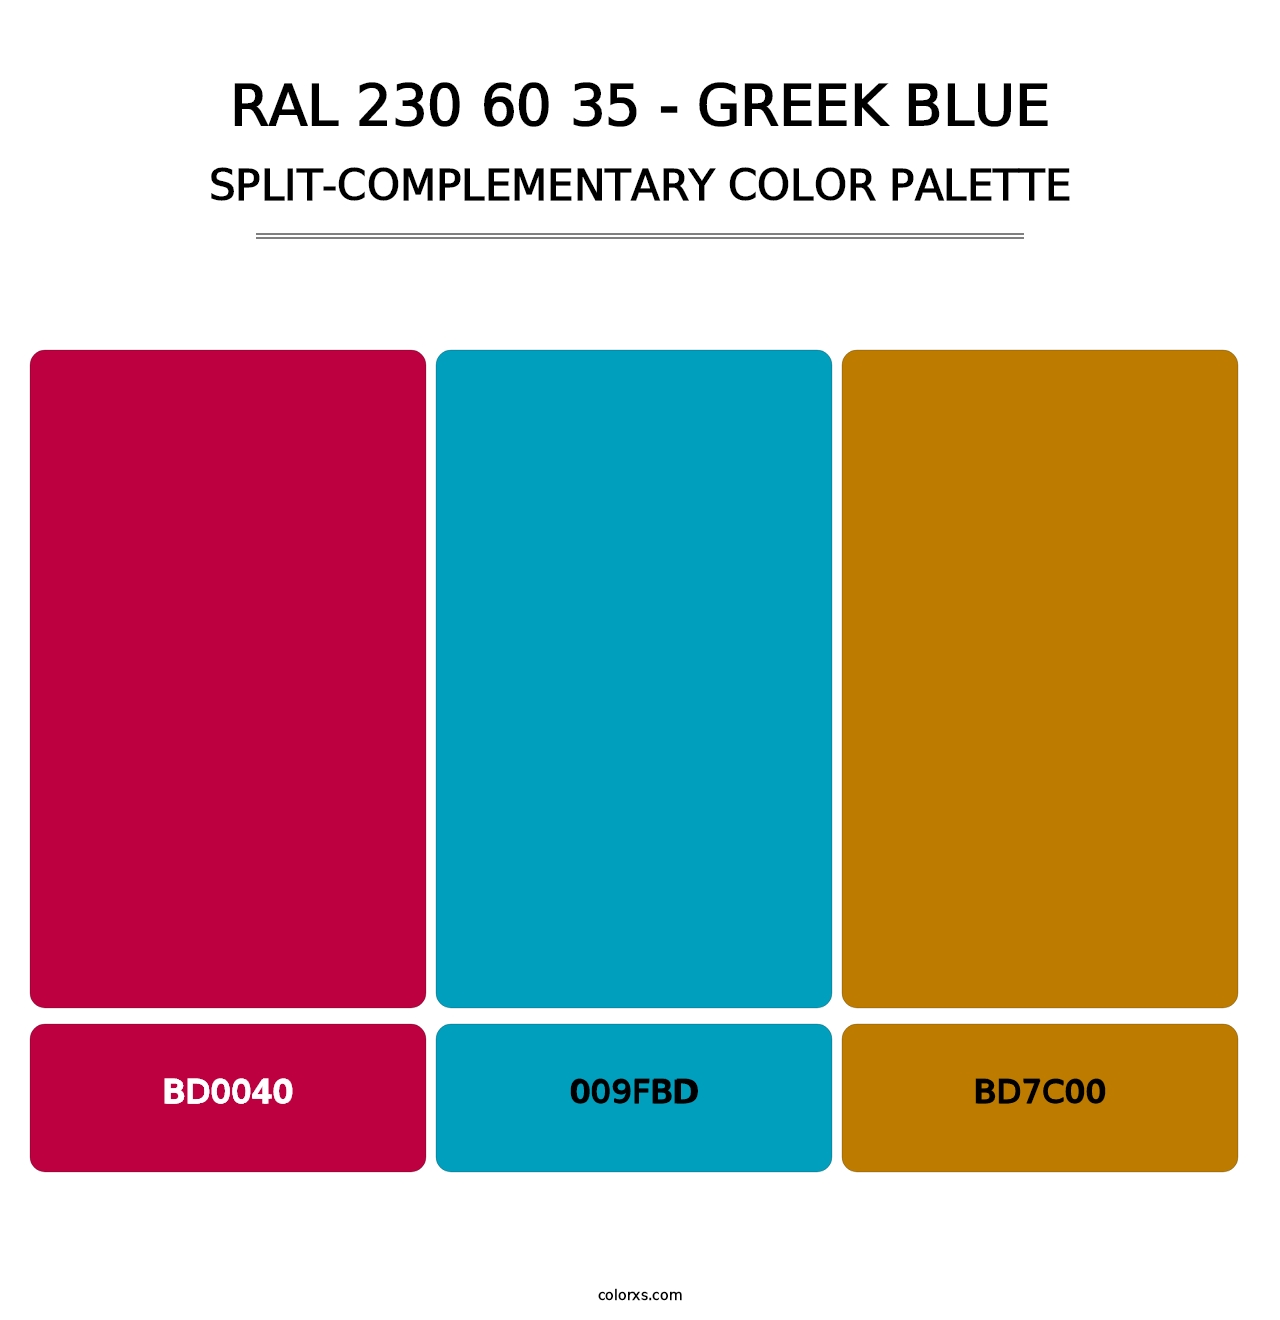 RAL 230 60 35 - Greek Blue - Split-Complementary Color Palette